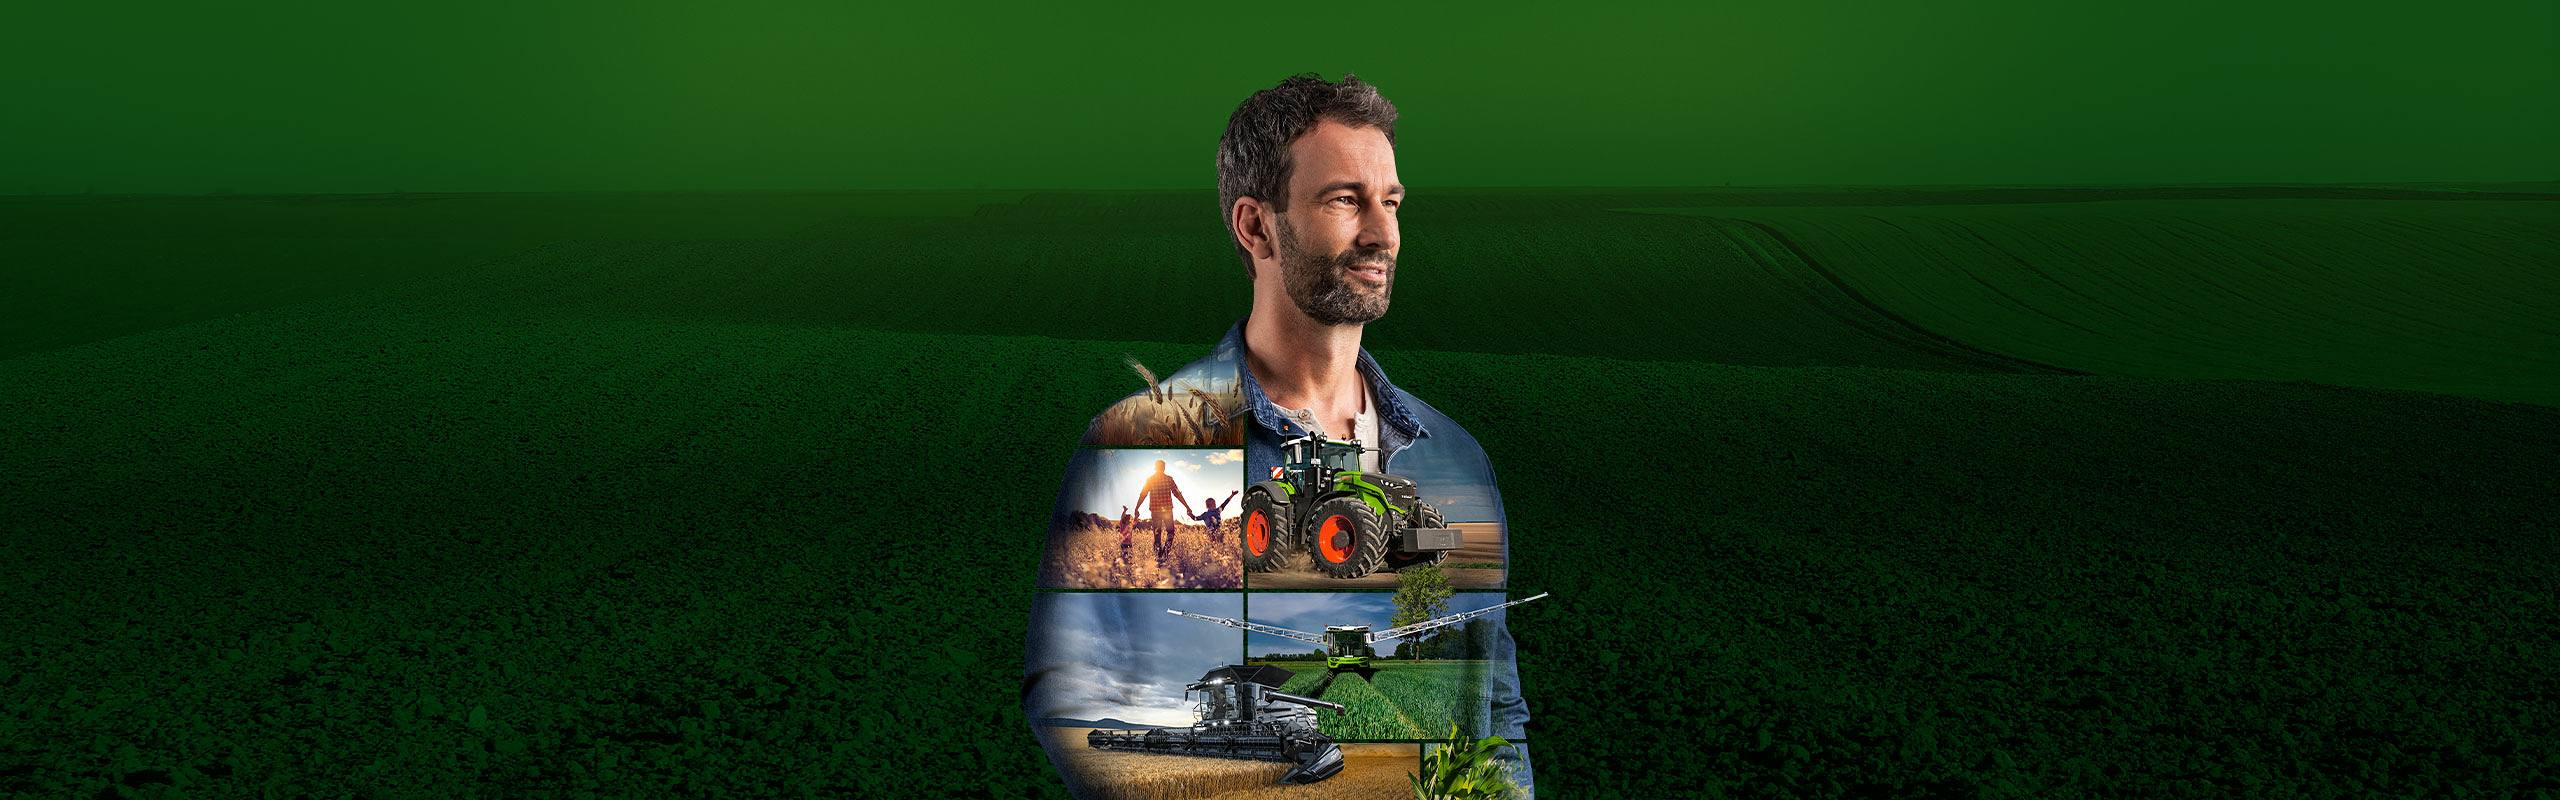 Un agriculteur se tient devant un paysage de verdure et regarde motivé vers l'avenir. Des produits Fendt sont représentés sur son t-shirt.